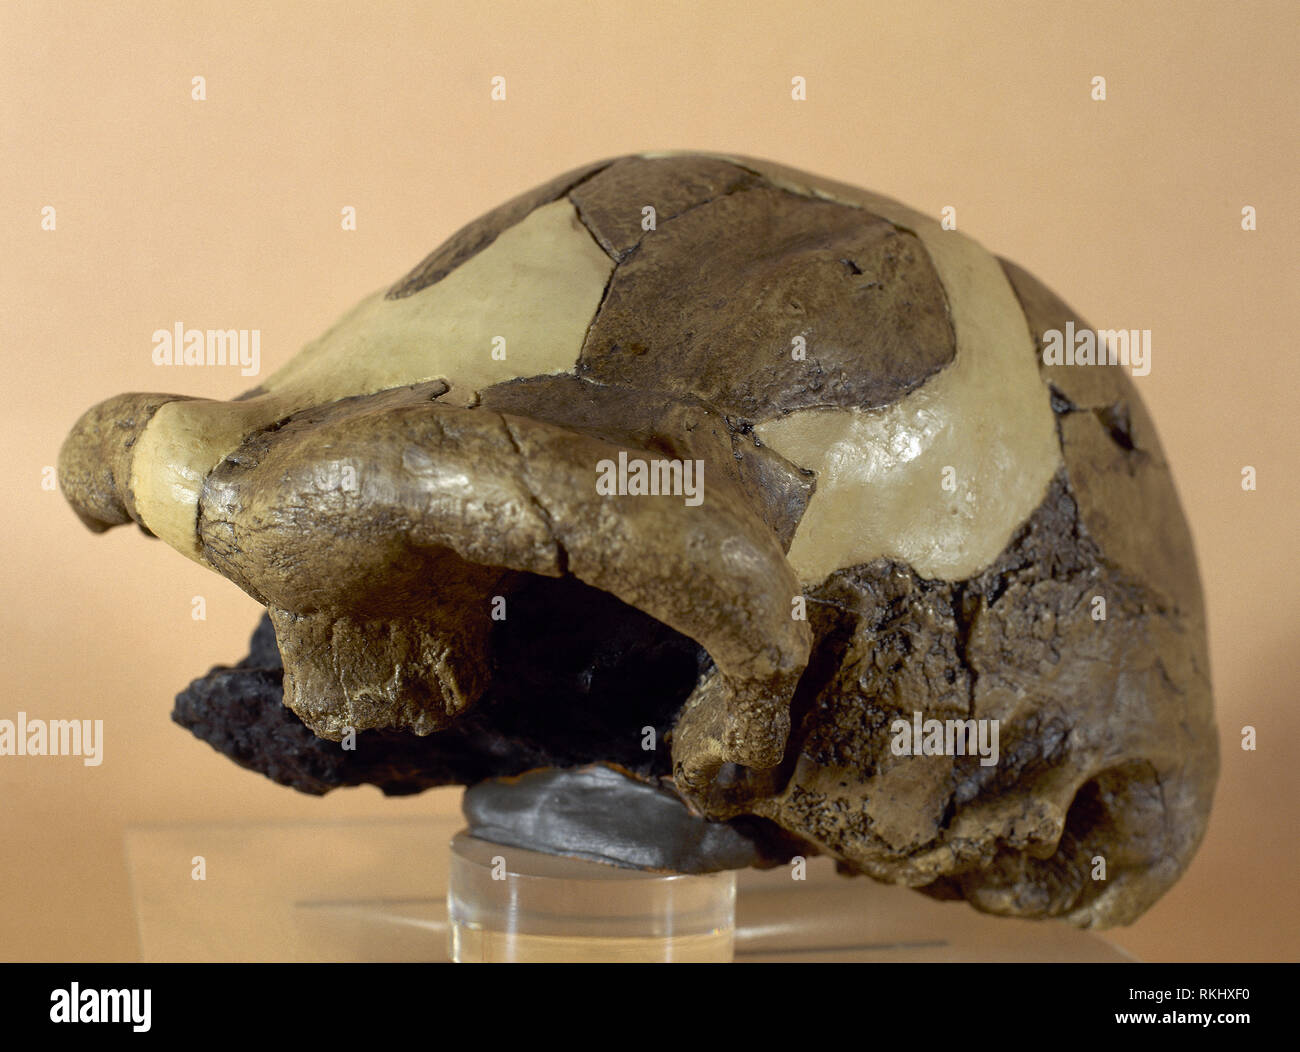 Die schädeldecke (im Cast gefüllt) des Homo erectus als OH9 bekannt oder 'Chellean Mann", zu finden unter Olduvia Schlucht, Tansania, Afrika, von Leakey. 1,4 Millionen Jahren. Gehirn größer als 1.000 Kubikzentimeter. Replik. Archäologisches Museum von Catalonia, Barcelona, Katalonien, Spanien. Stockfoto